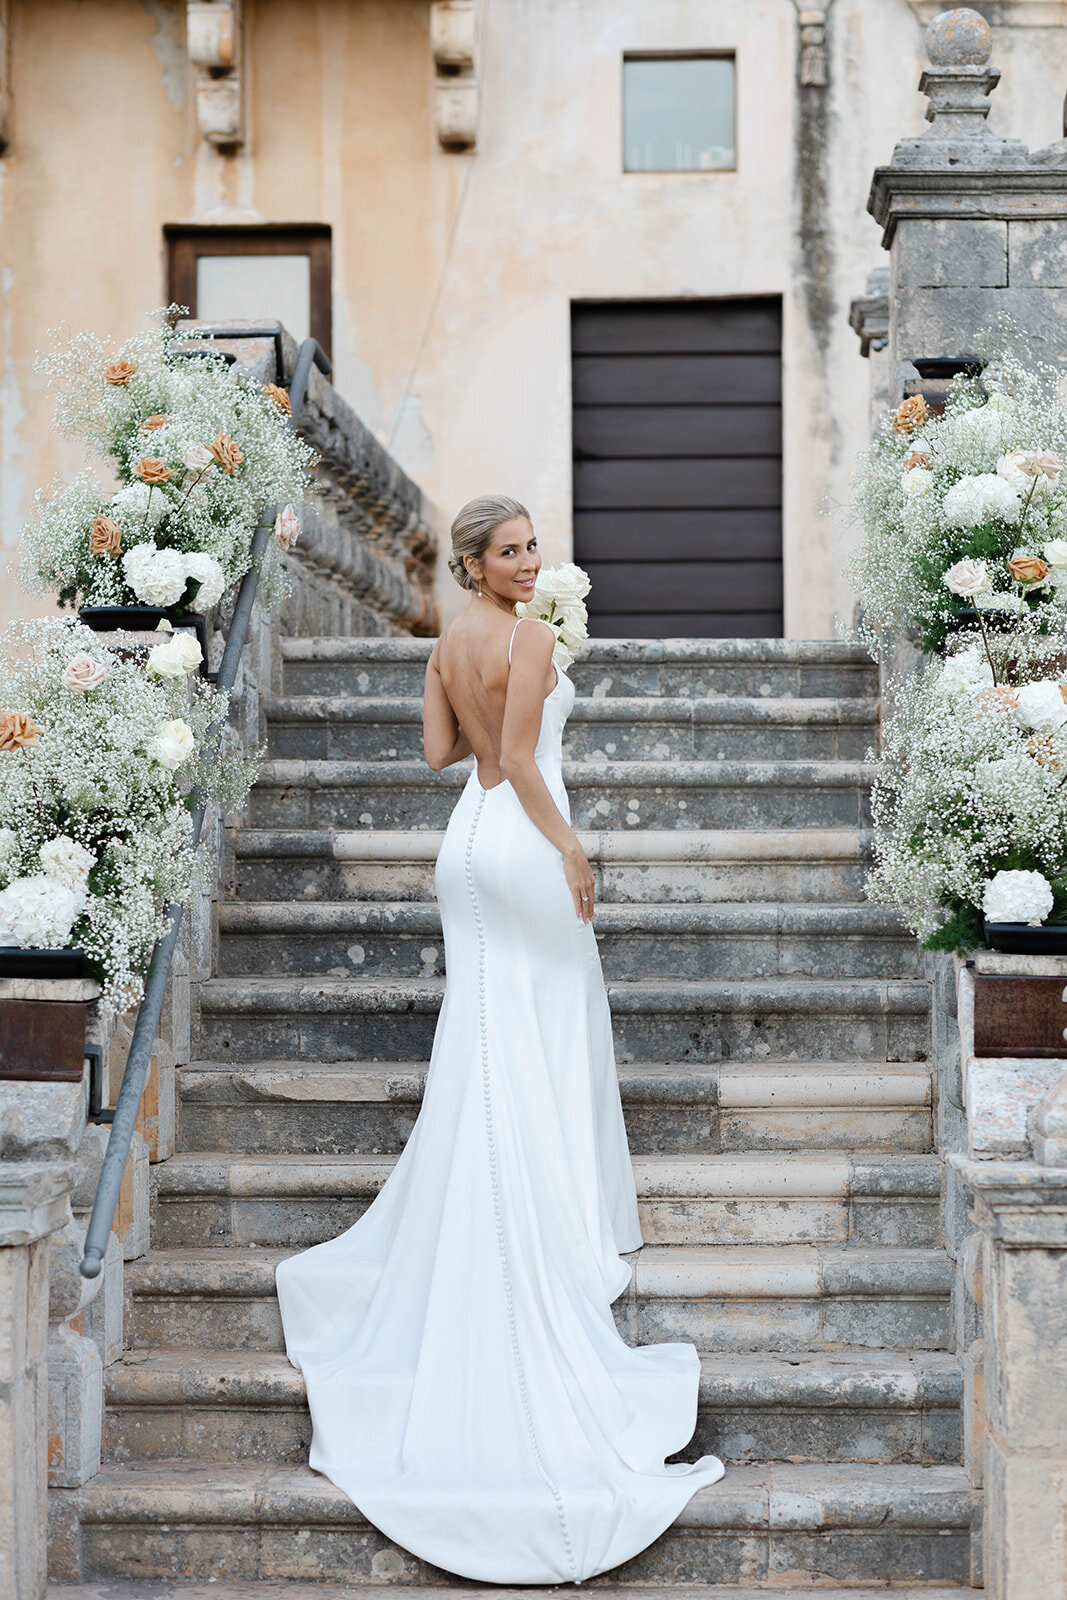 Castello_Marchione_wedding_photographer_bari42